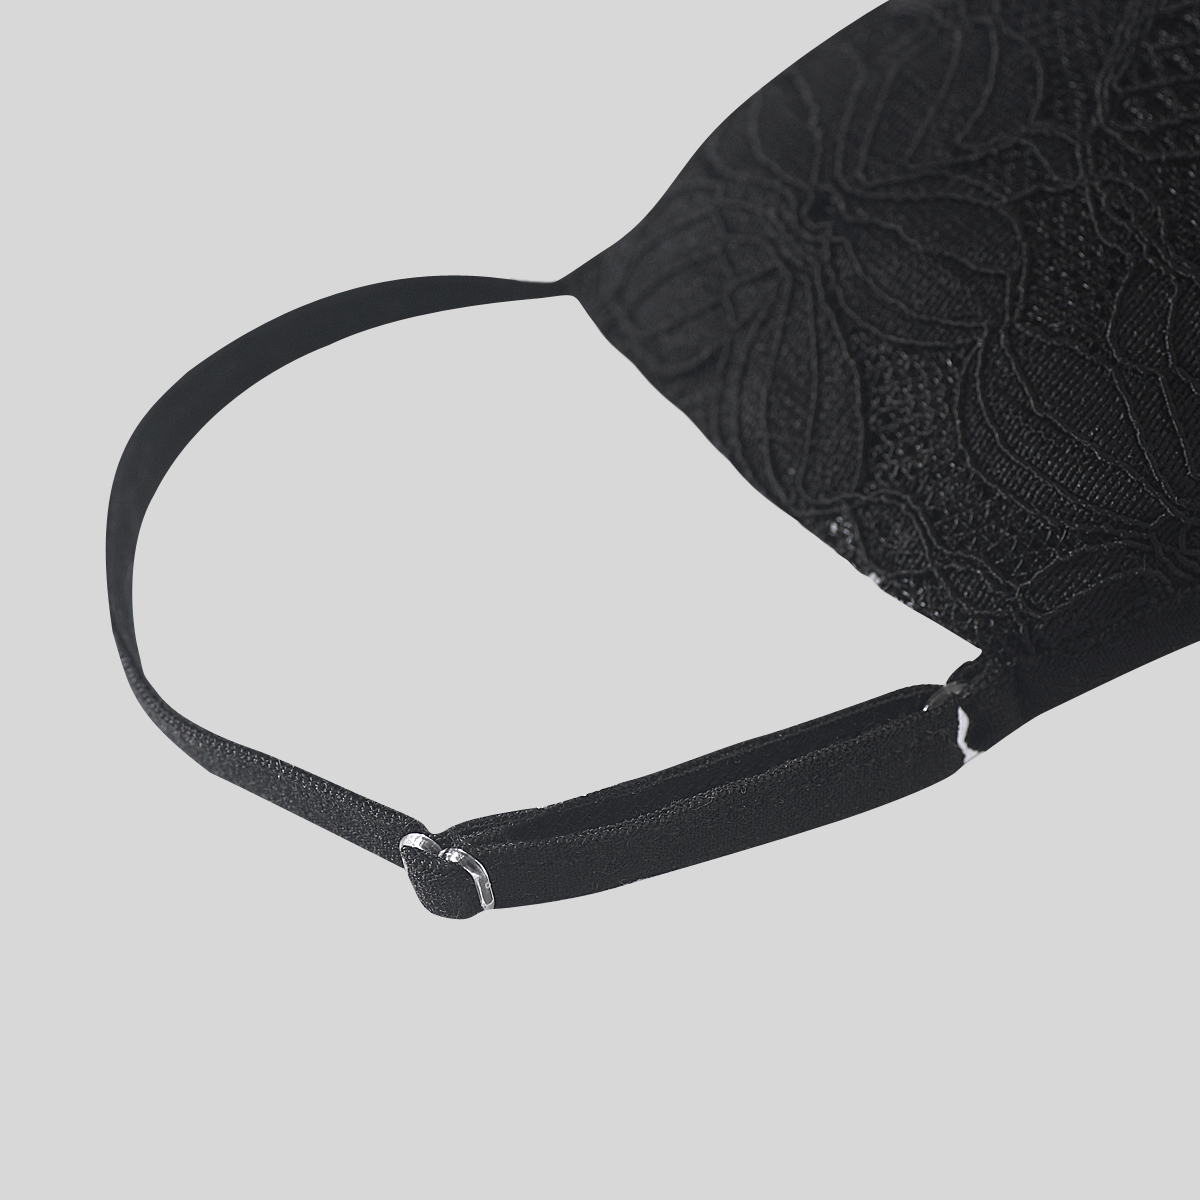 ネオデザインニット織りシルクブレンドレース生地フェイスマスク4層シックなフェイスカバー黒と白のフェイスマスク